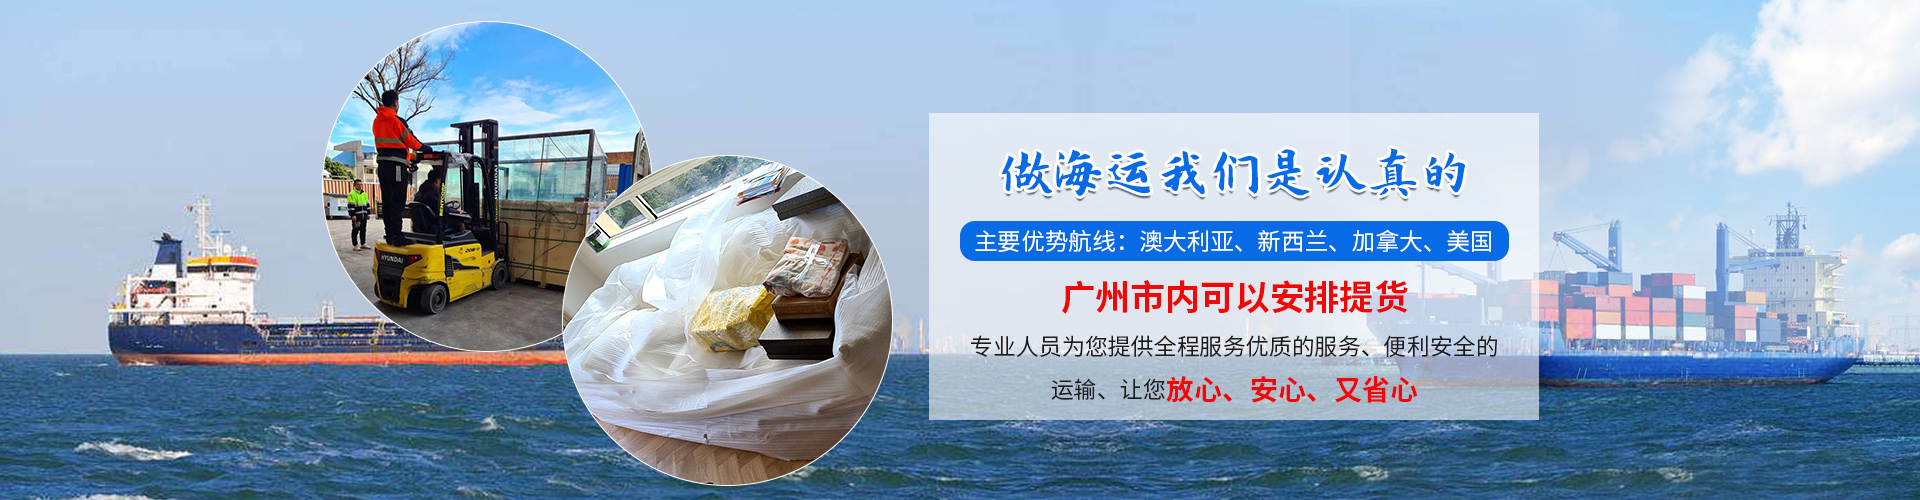 上海留学生活海运海运灯具到新西兰基督城